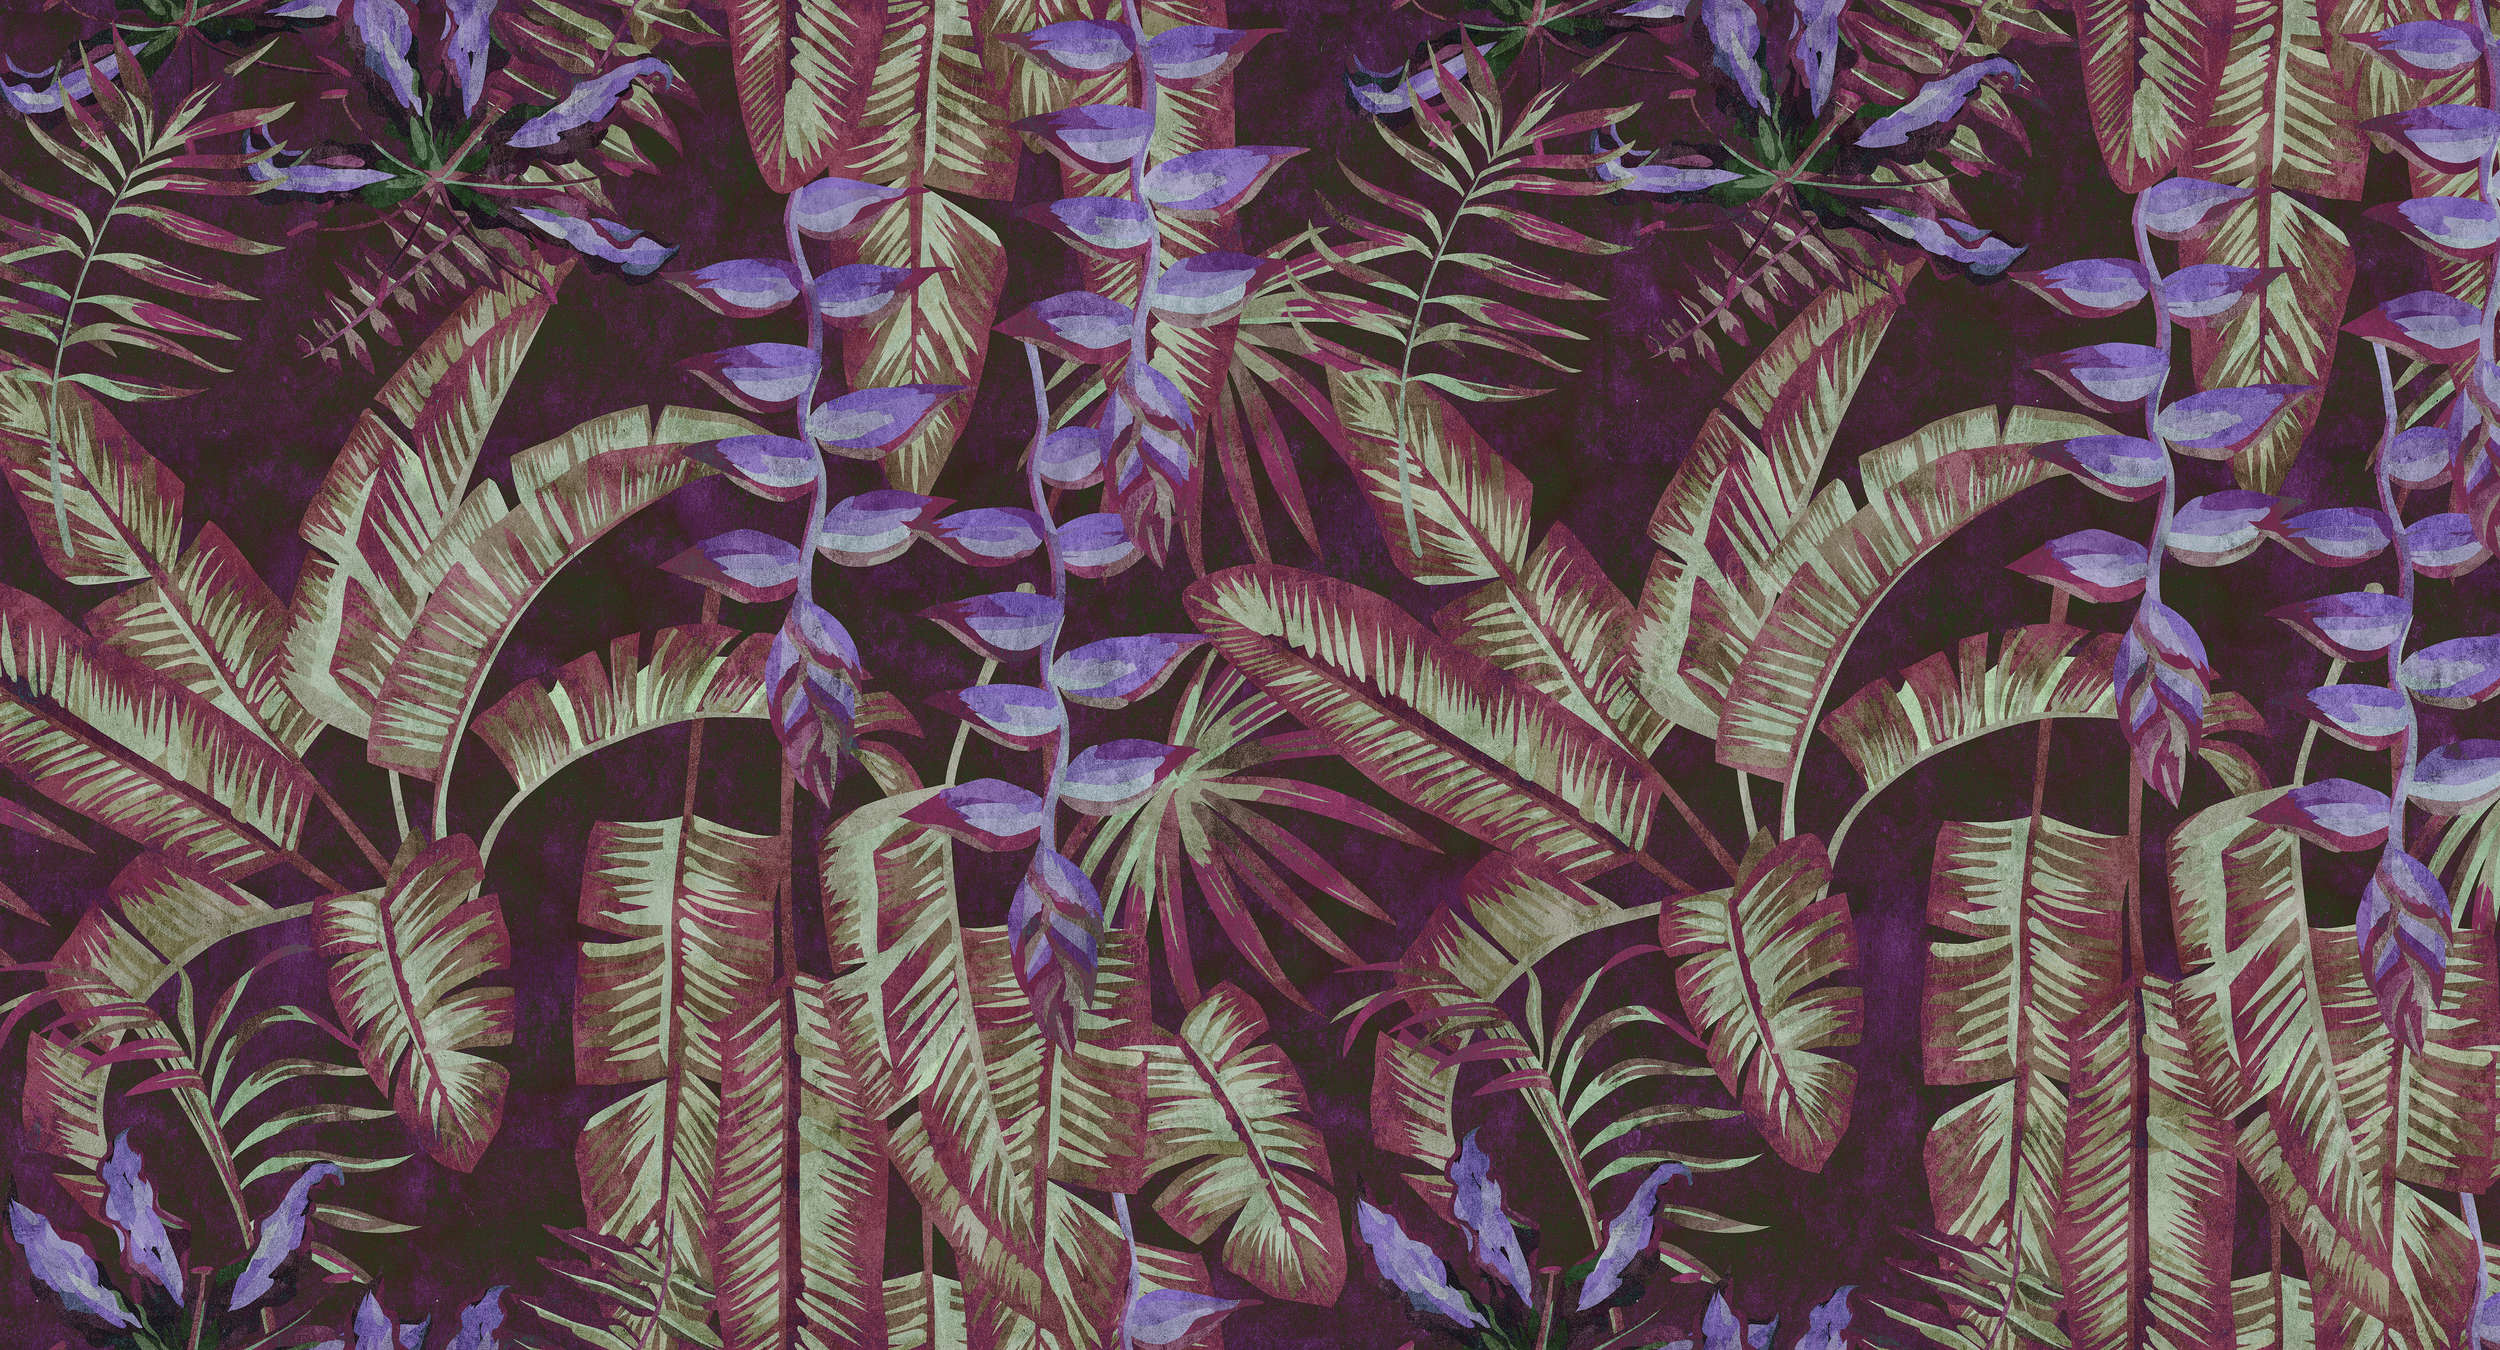             Tropicana 3 - Papier peint tropical structure buvard avec feuilles & fougères - rouge, violet | À structure intissé
        